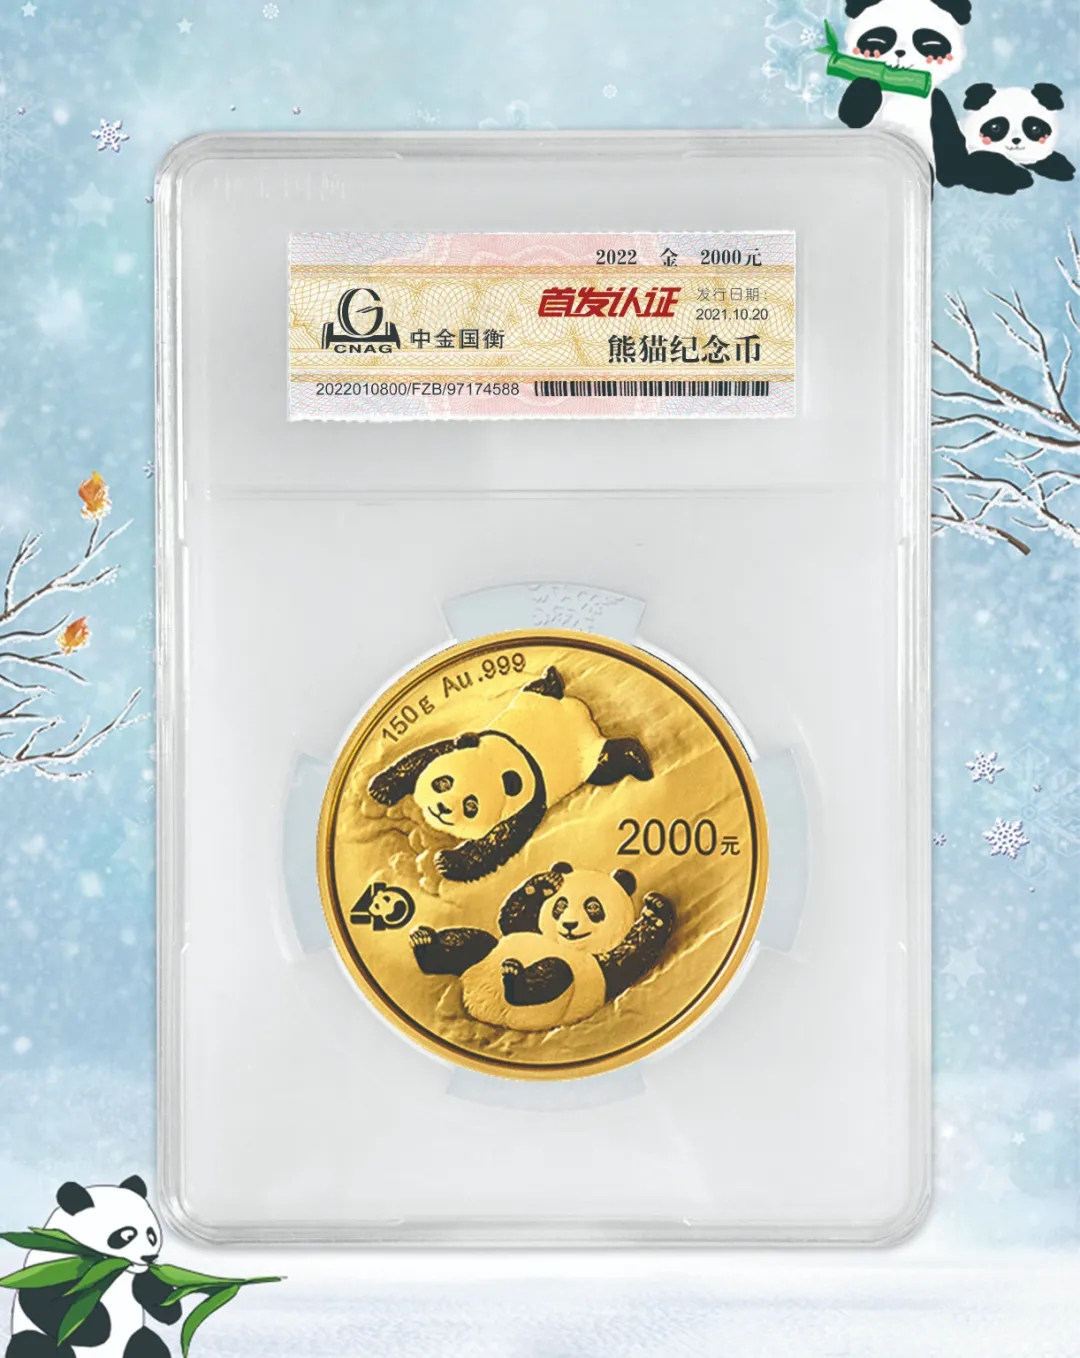 公告丨2022版熊猫贵金属纪念币“首发认证”开始预约